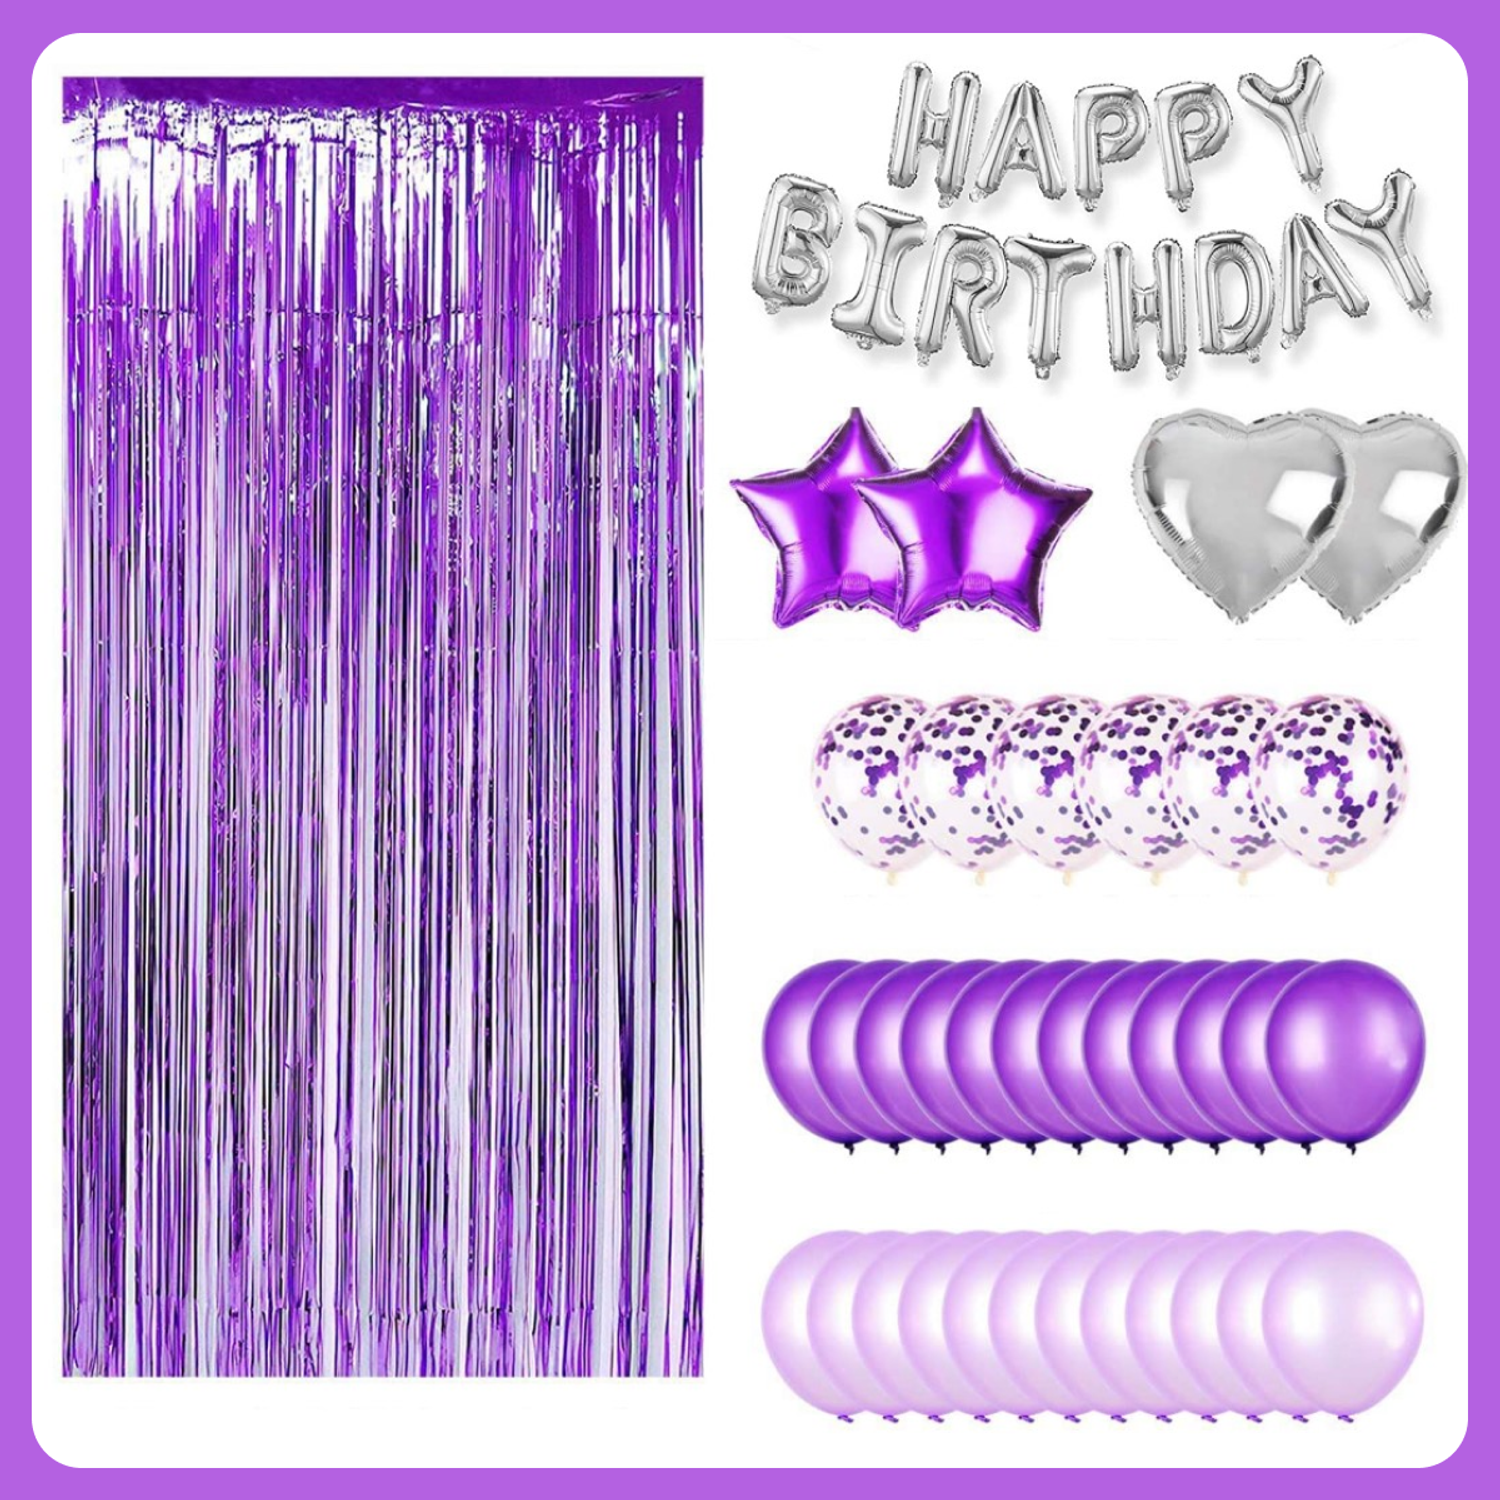 Набор воздушных шаров Мишины шарики для фотозоны на день рождения с фольгированными буквами Happy Birthday - фото 2